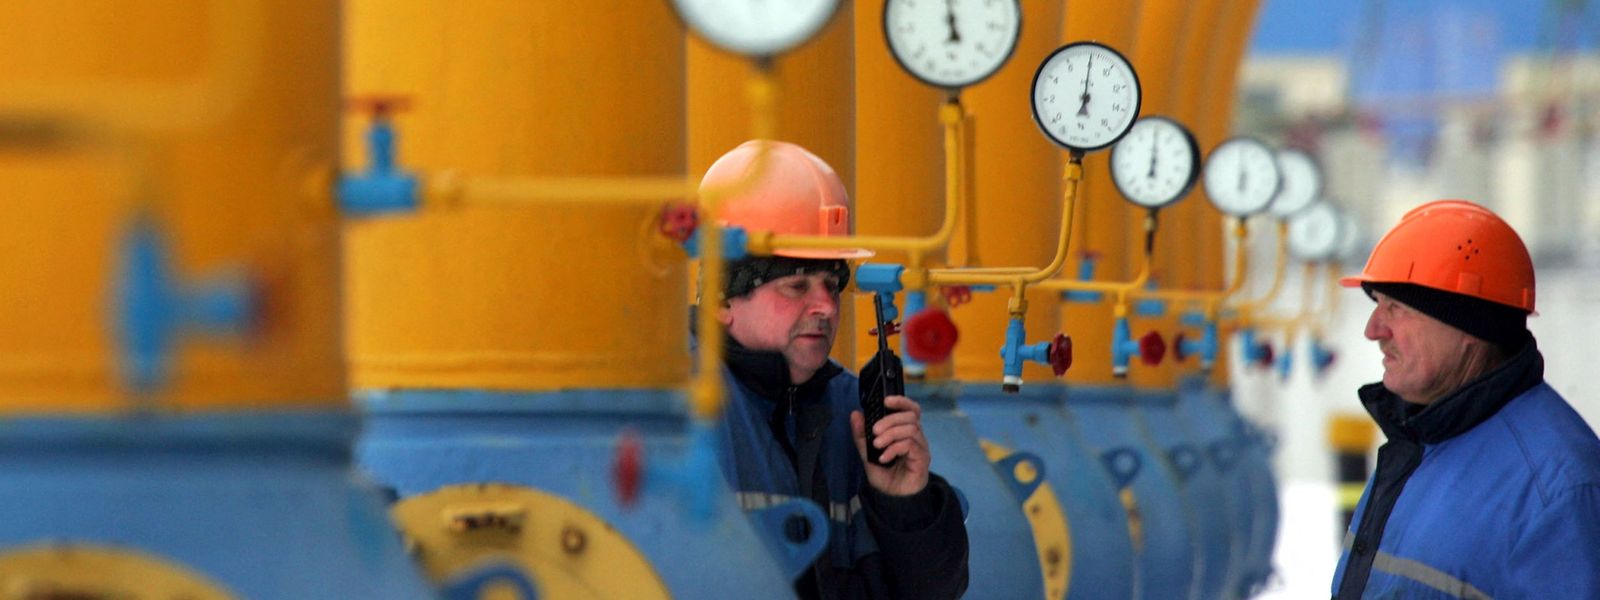 Vorschläge für einen Gaspreisdeckel auf EU-Ebene sorgen in der EU für heftigen Streit.